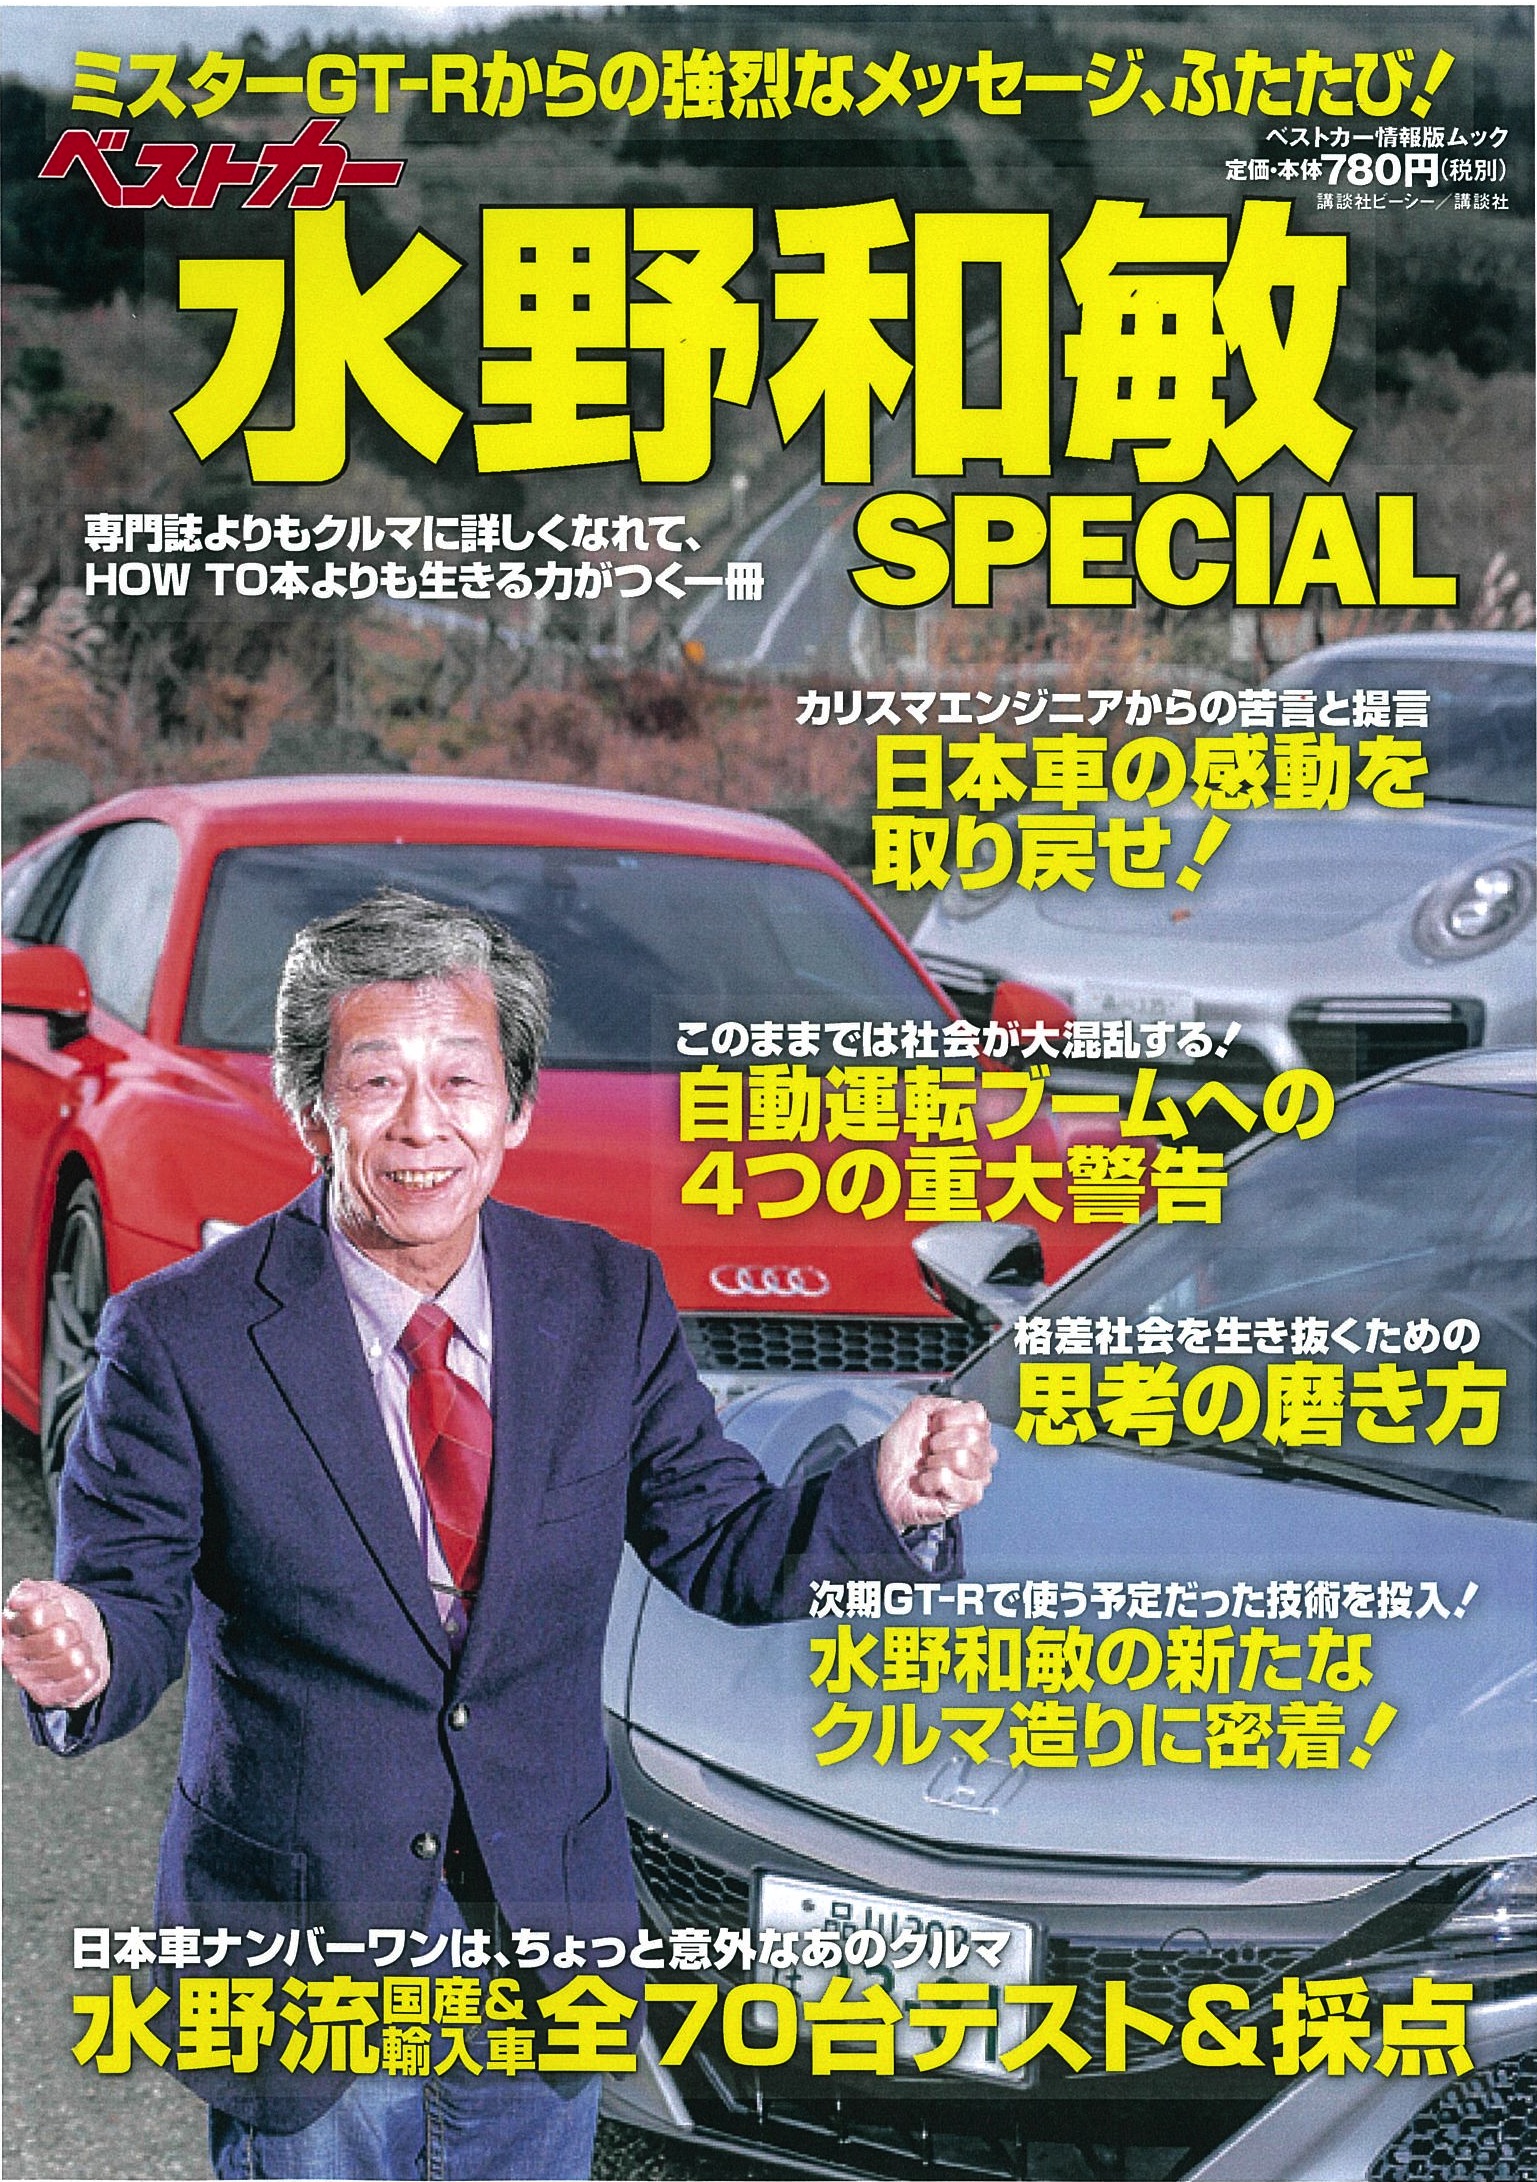 ベストカー水野和敏special 17年1月23日発売 株式会社講談社のプレスリリース